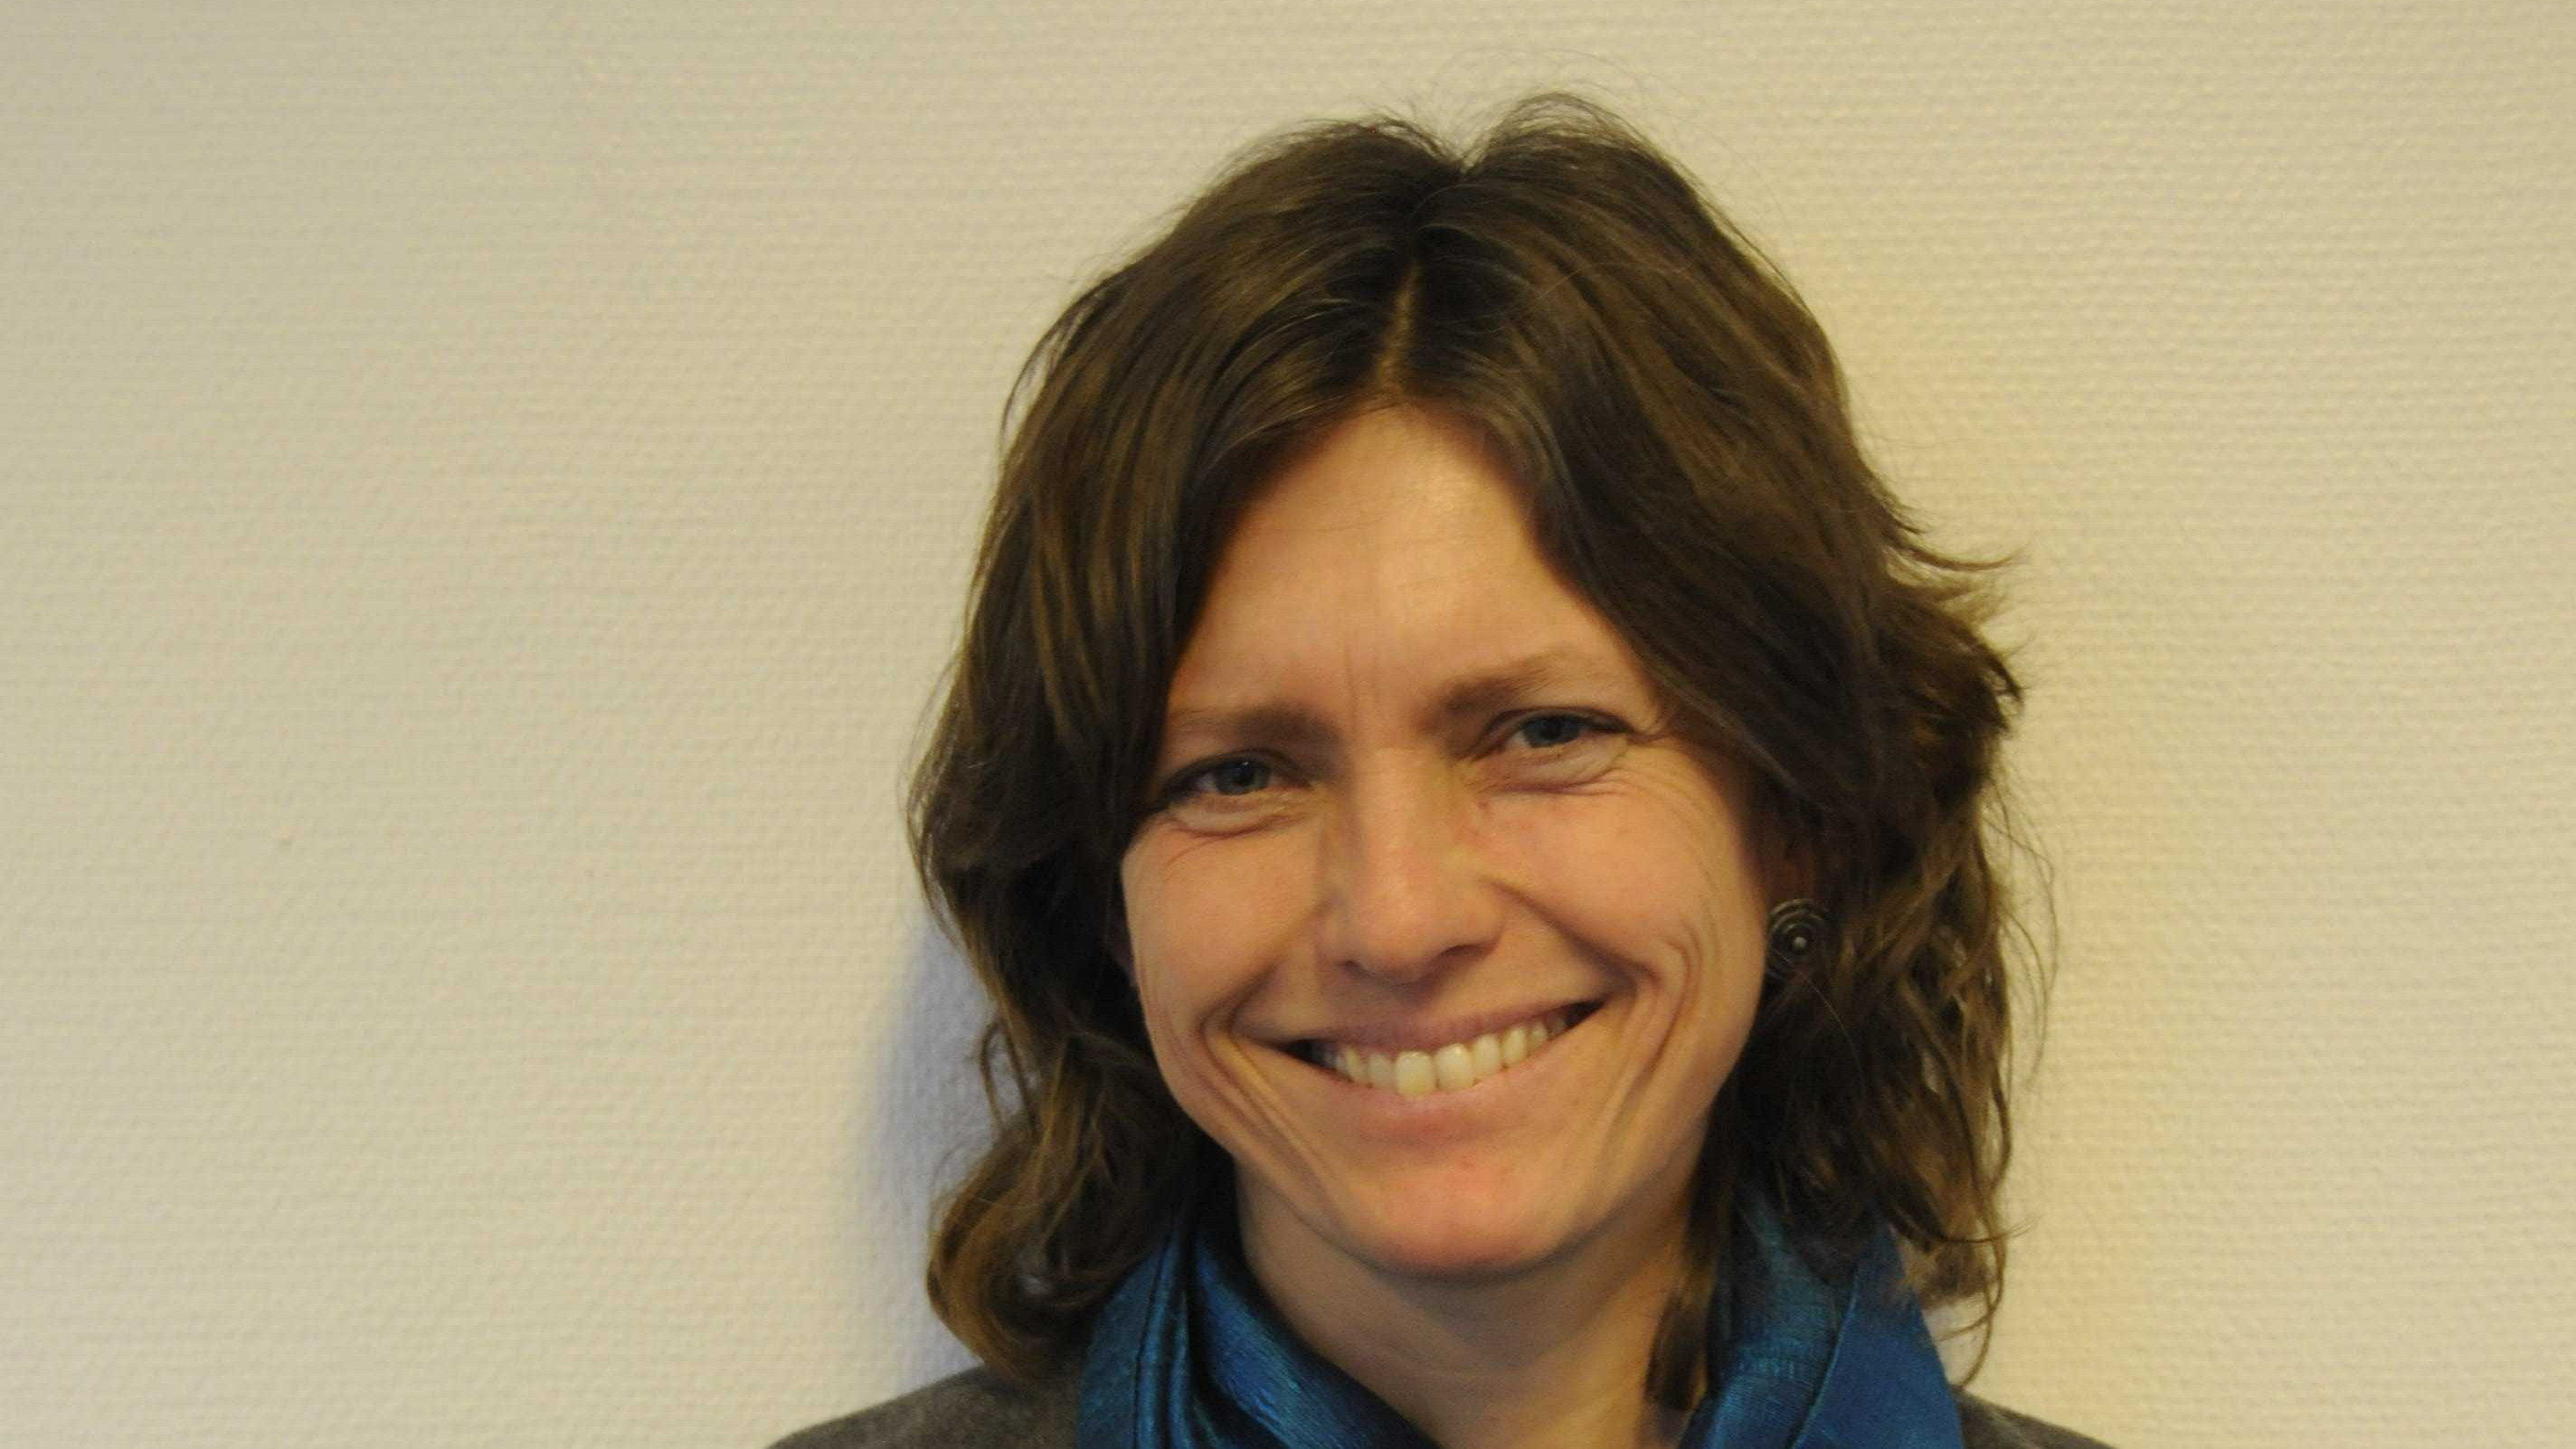 Tina Unger har været en del af bestyrelsen siden 2017 og arbejder med bæredygtighed i Lejre Kommune